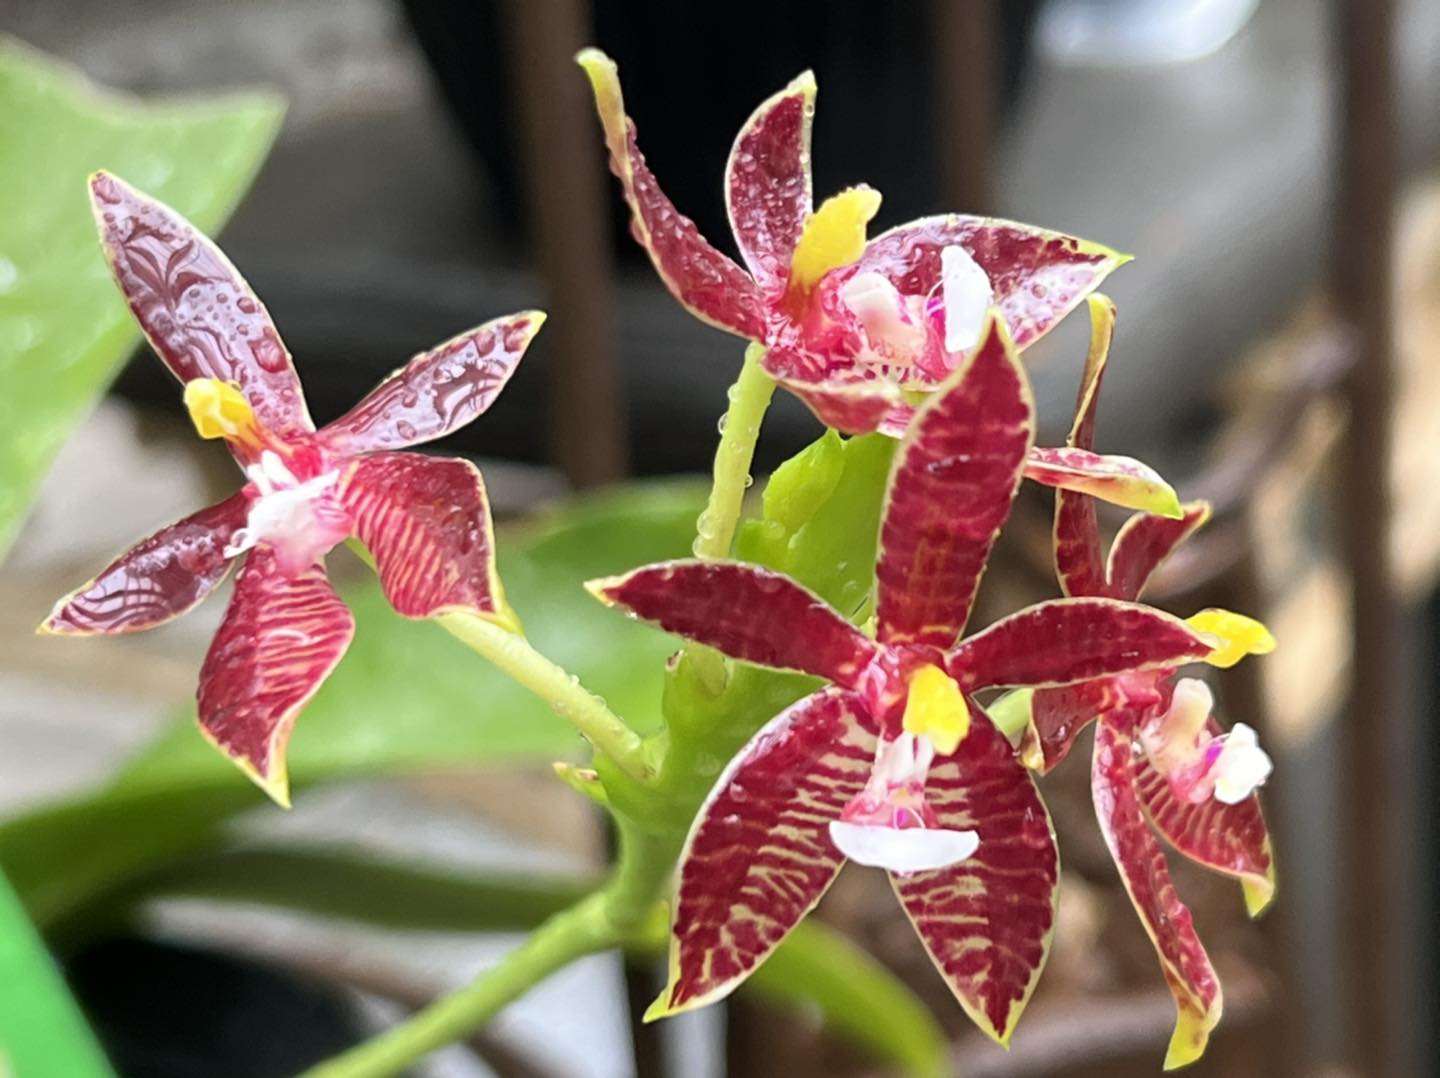 Orchidée 'Pretoria' – Phalaenopsis - H.50/60cm – pot de 12 – cache pot blanc